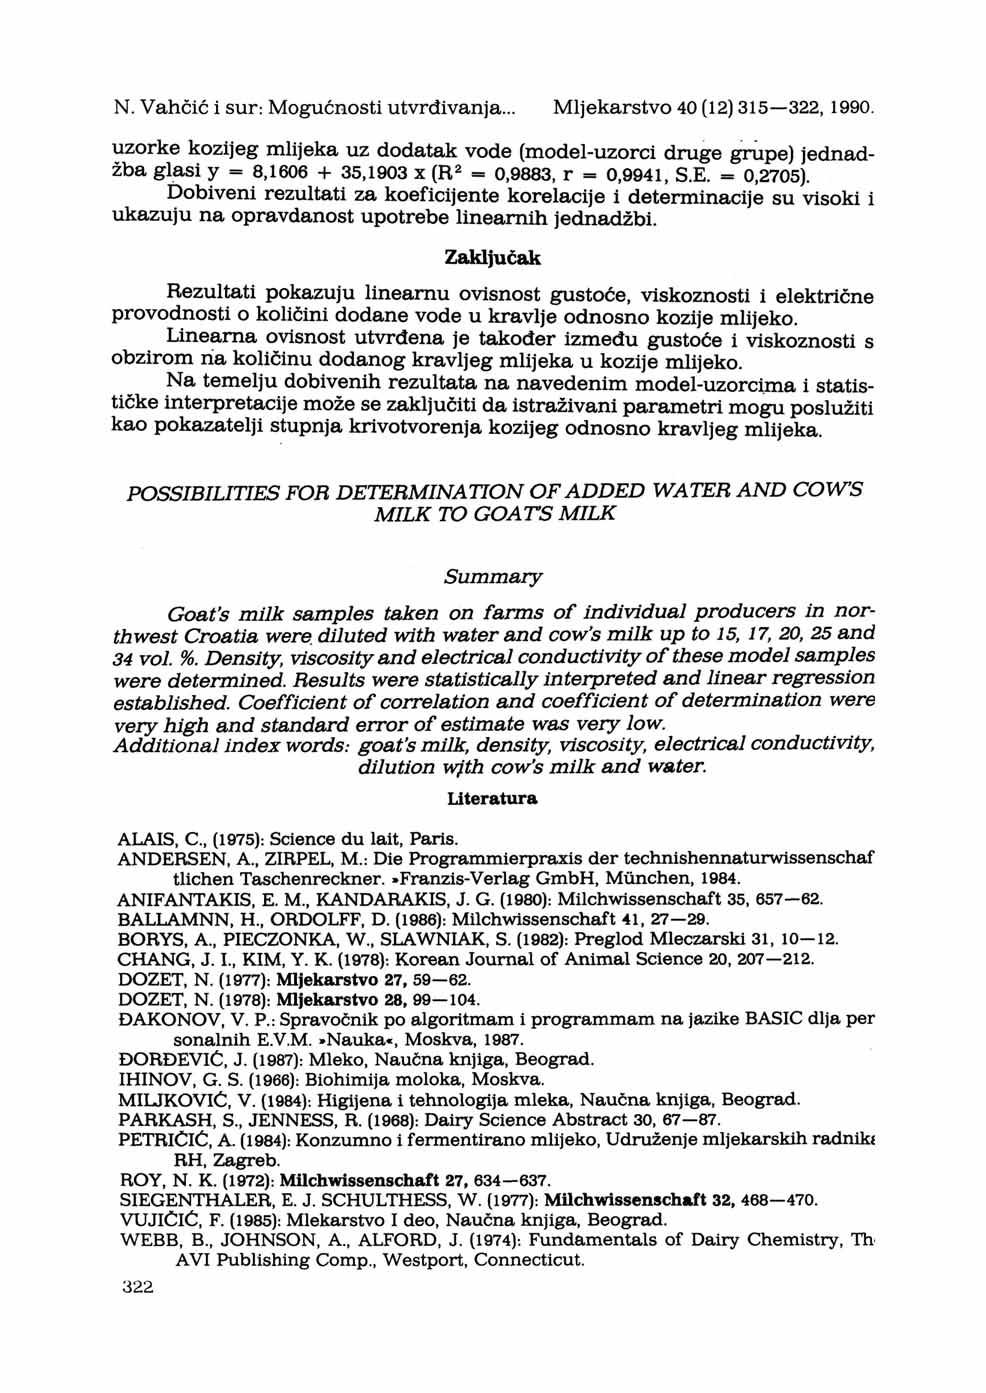 N. Vahčić i sur: Mogućnosti utvrđivanja... Mljekarstvo 40 (12) 315 322, 1990.